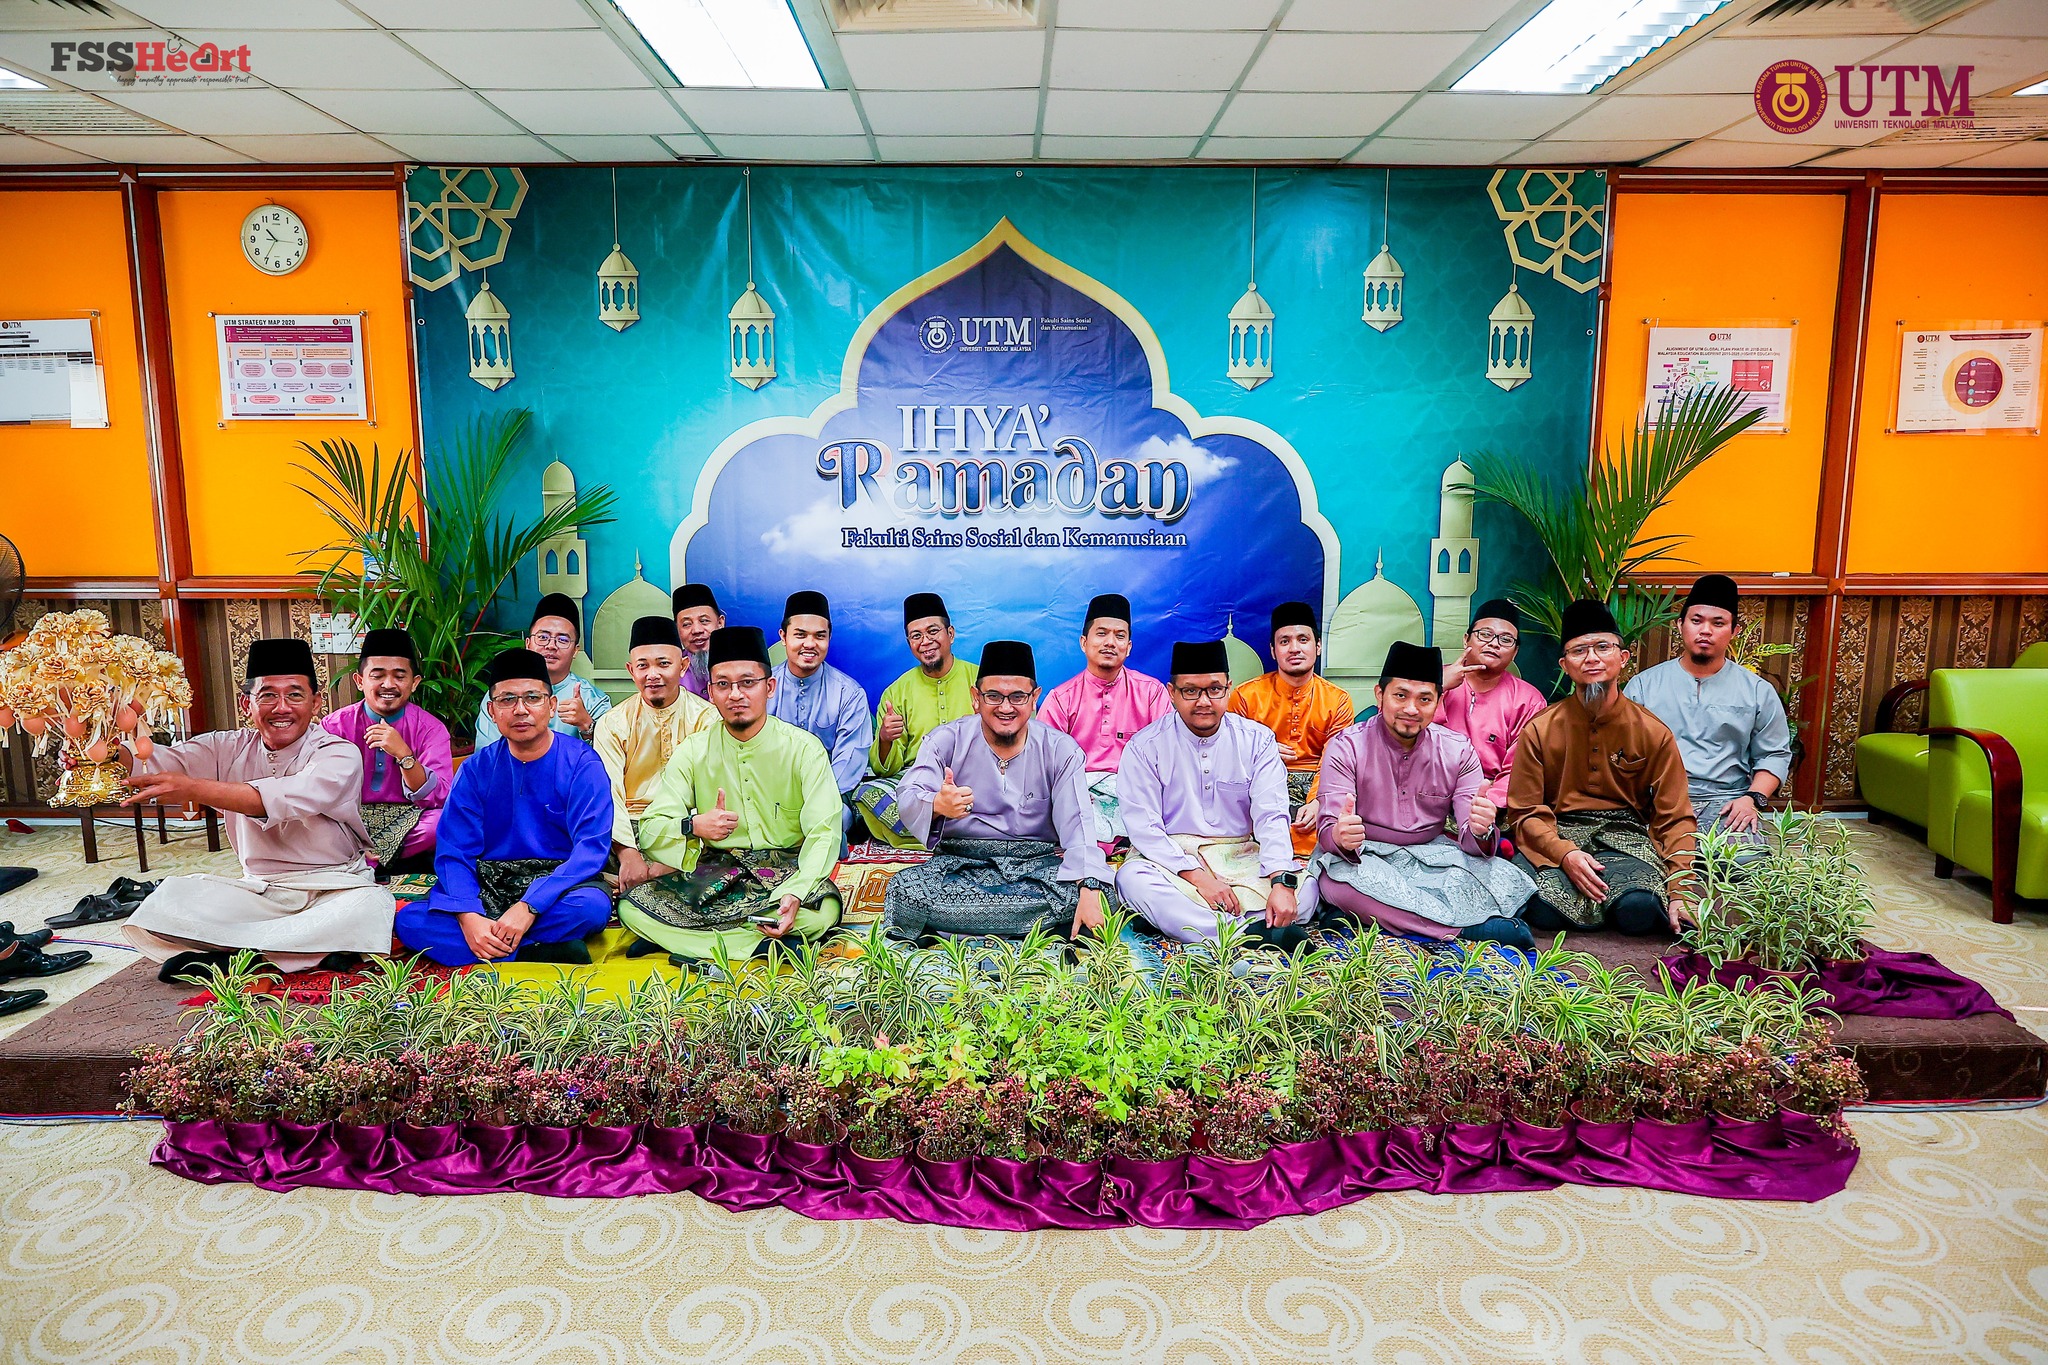 Warga FSSH semarakkan program Ihya’ Ramadan, santuni pelajar dan staf yang memerlukan